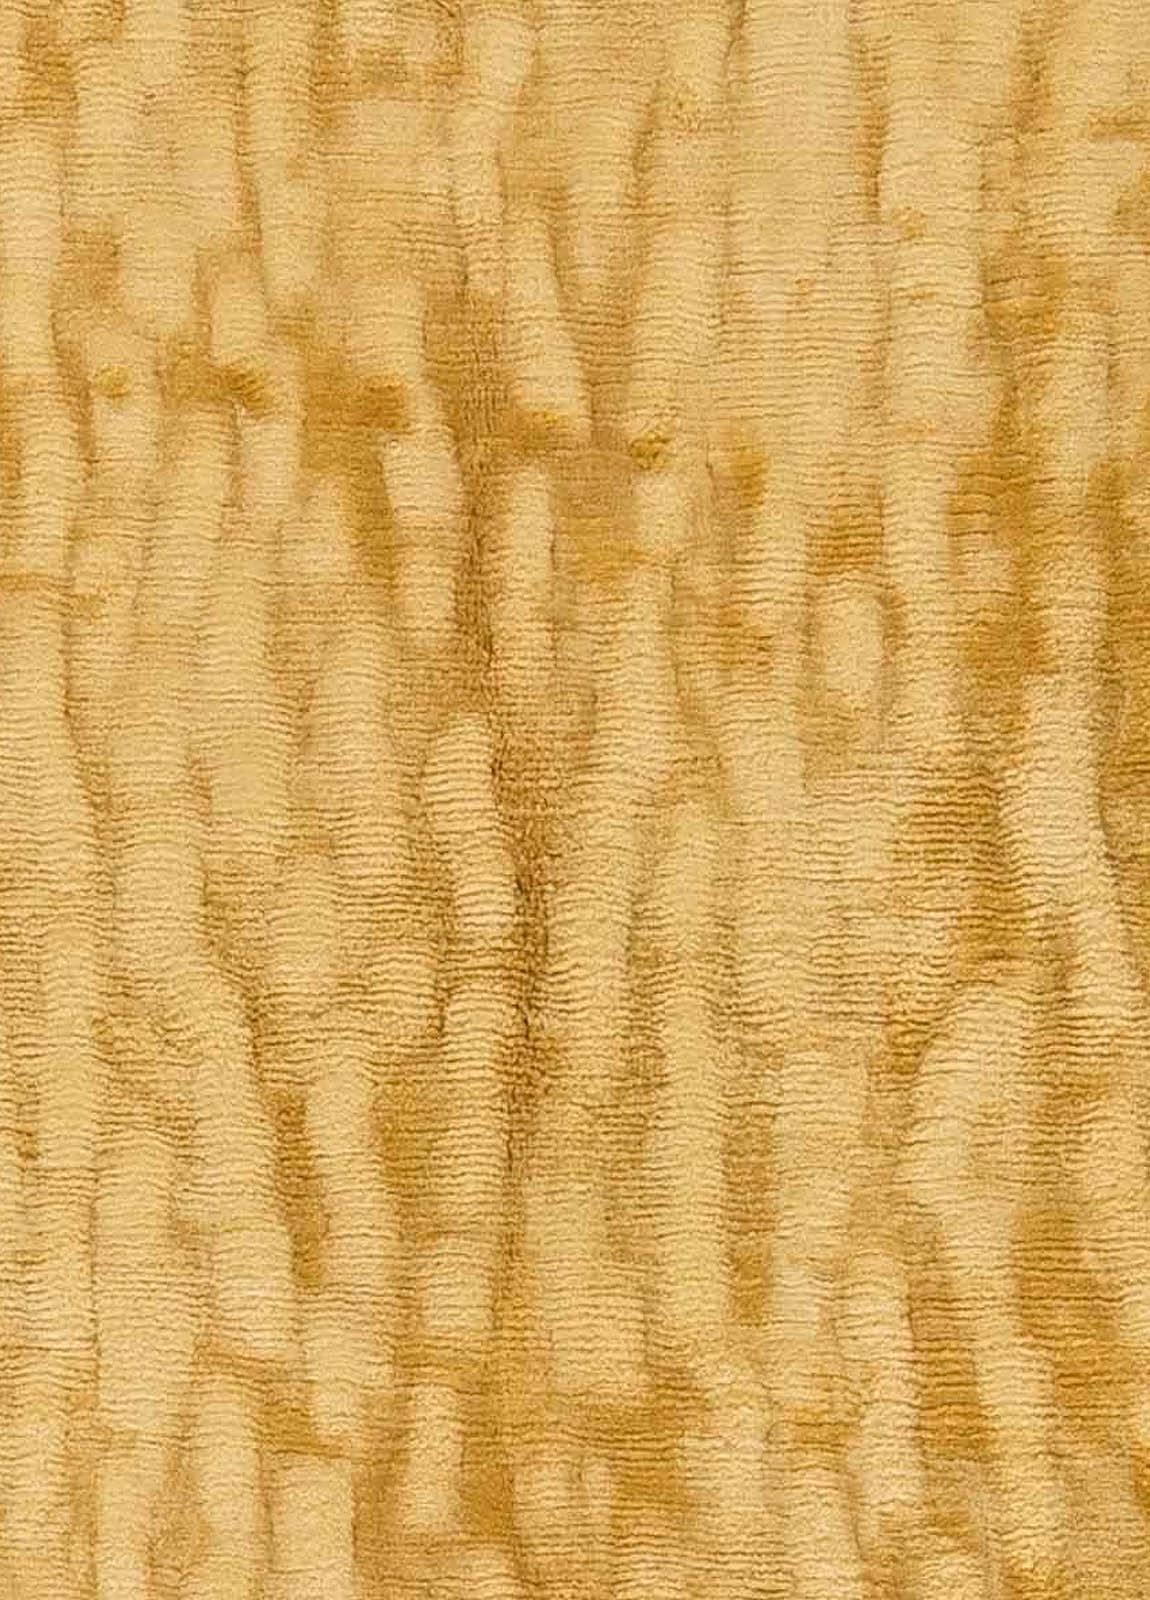 Zeitgenössischer abstrakter Sanddünen-Seiden-Tibetteppich von Doris Leslie Blau.
Größe: 8'3